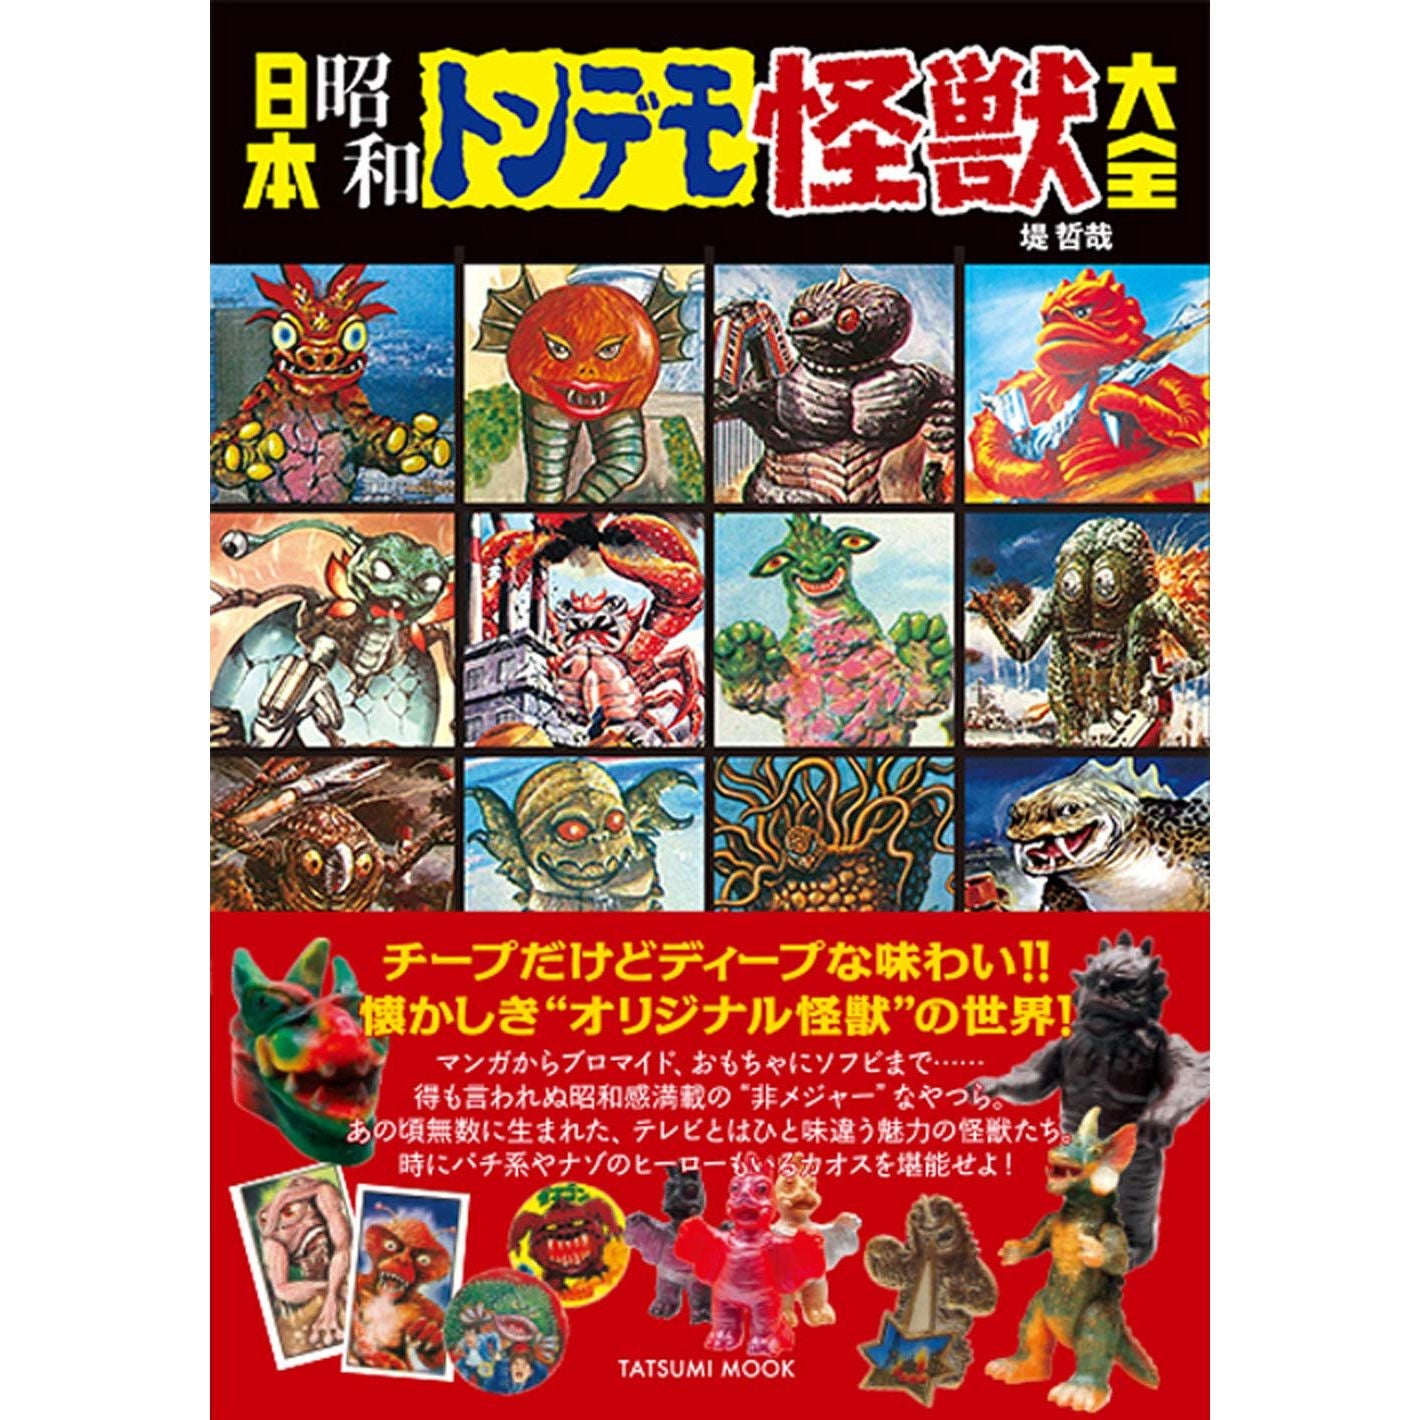 Japanese classic Monster catalog